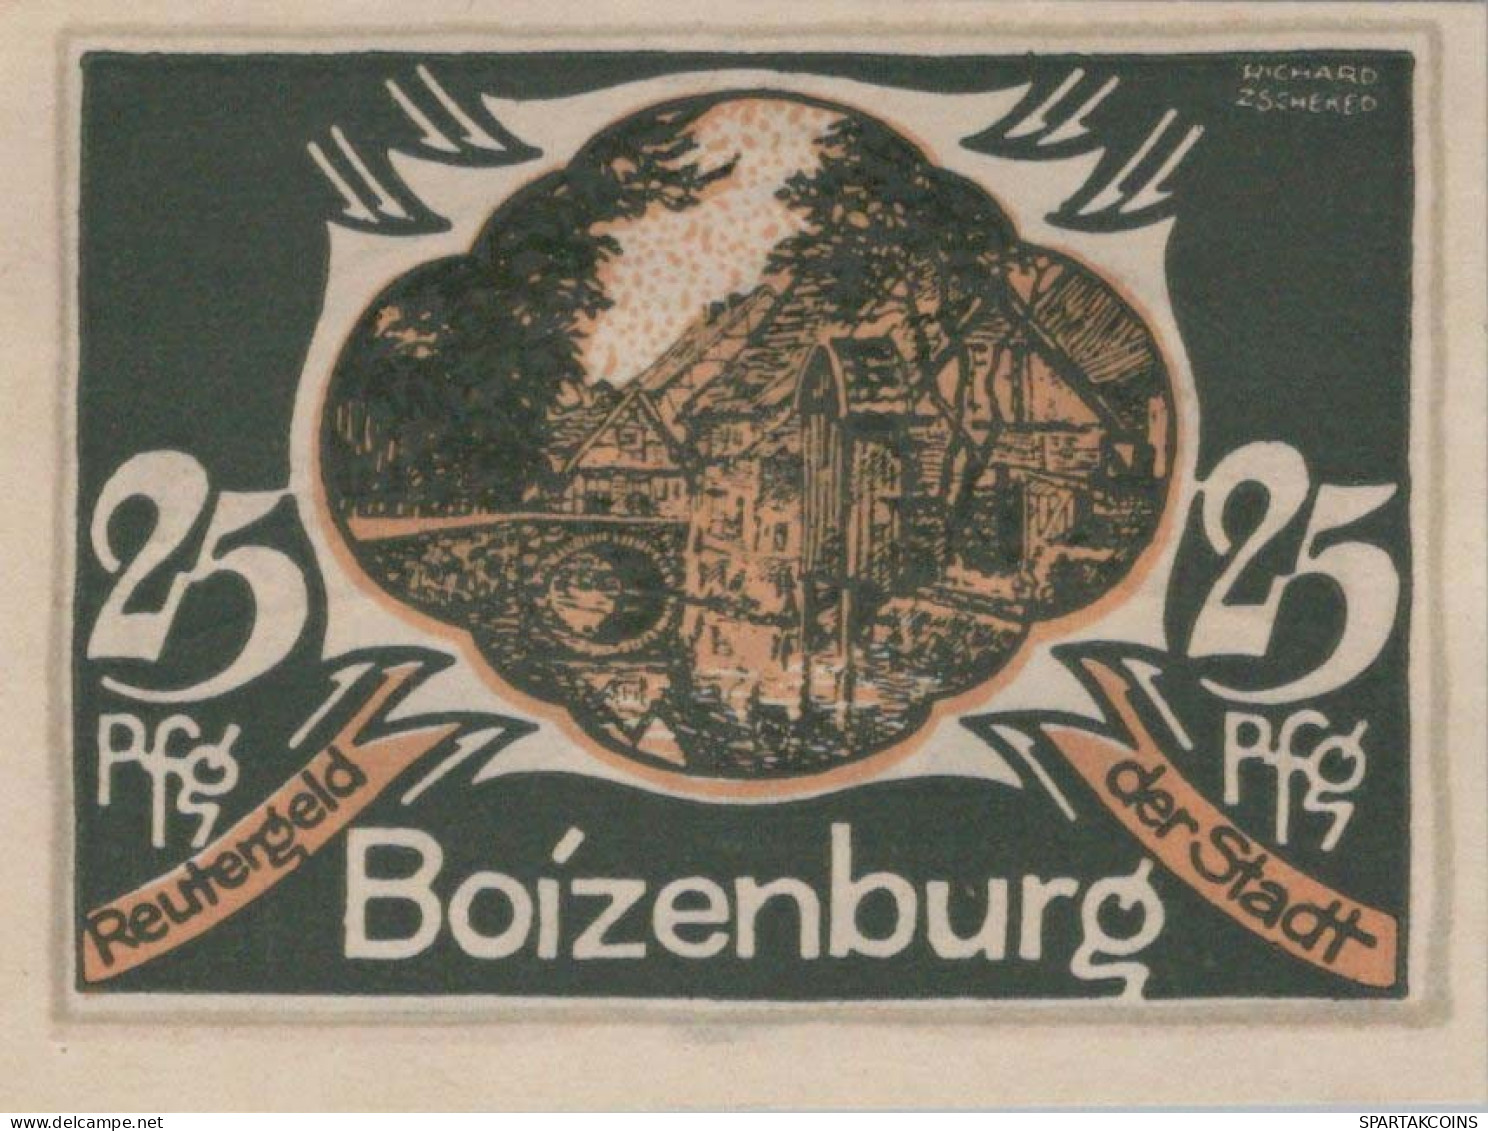 25 PFENNIG 1922 Stadt BOIZENBURG Mecklenburg-Schwerin UNC DEUTSCHLAND #PA254 - [11] Local Banknote Issues